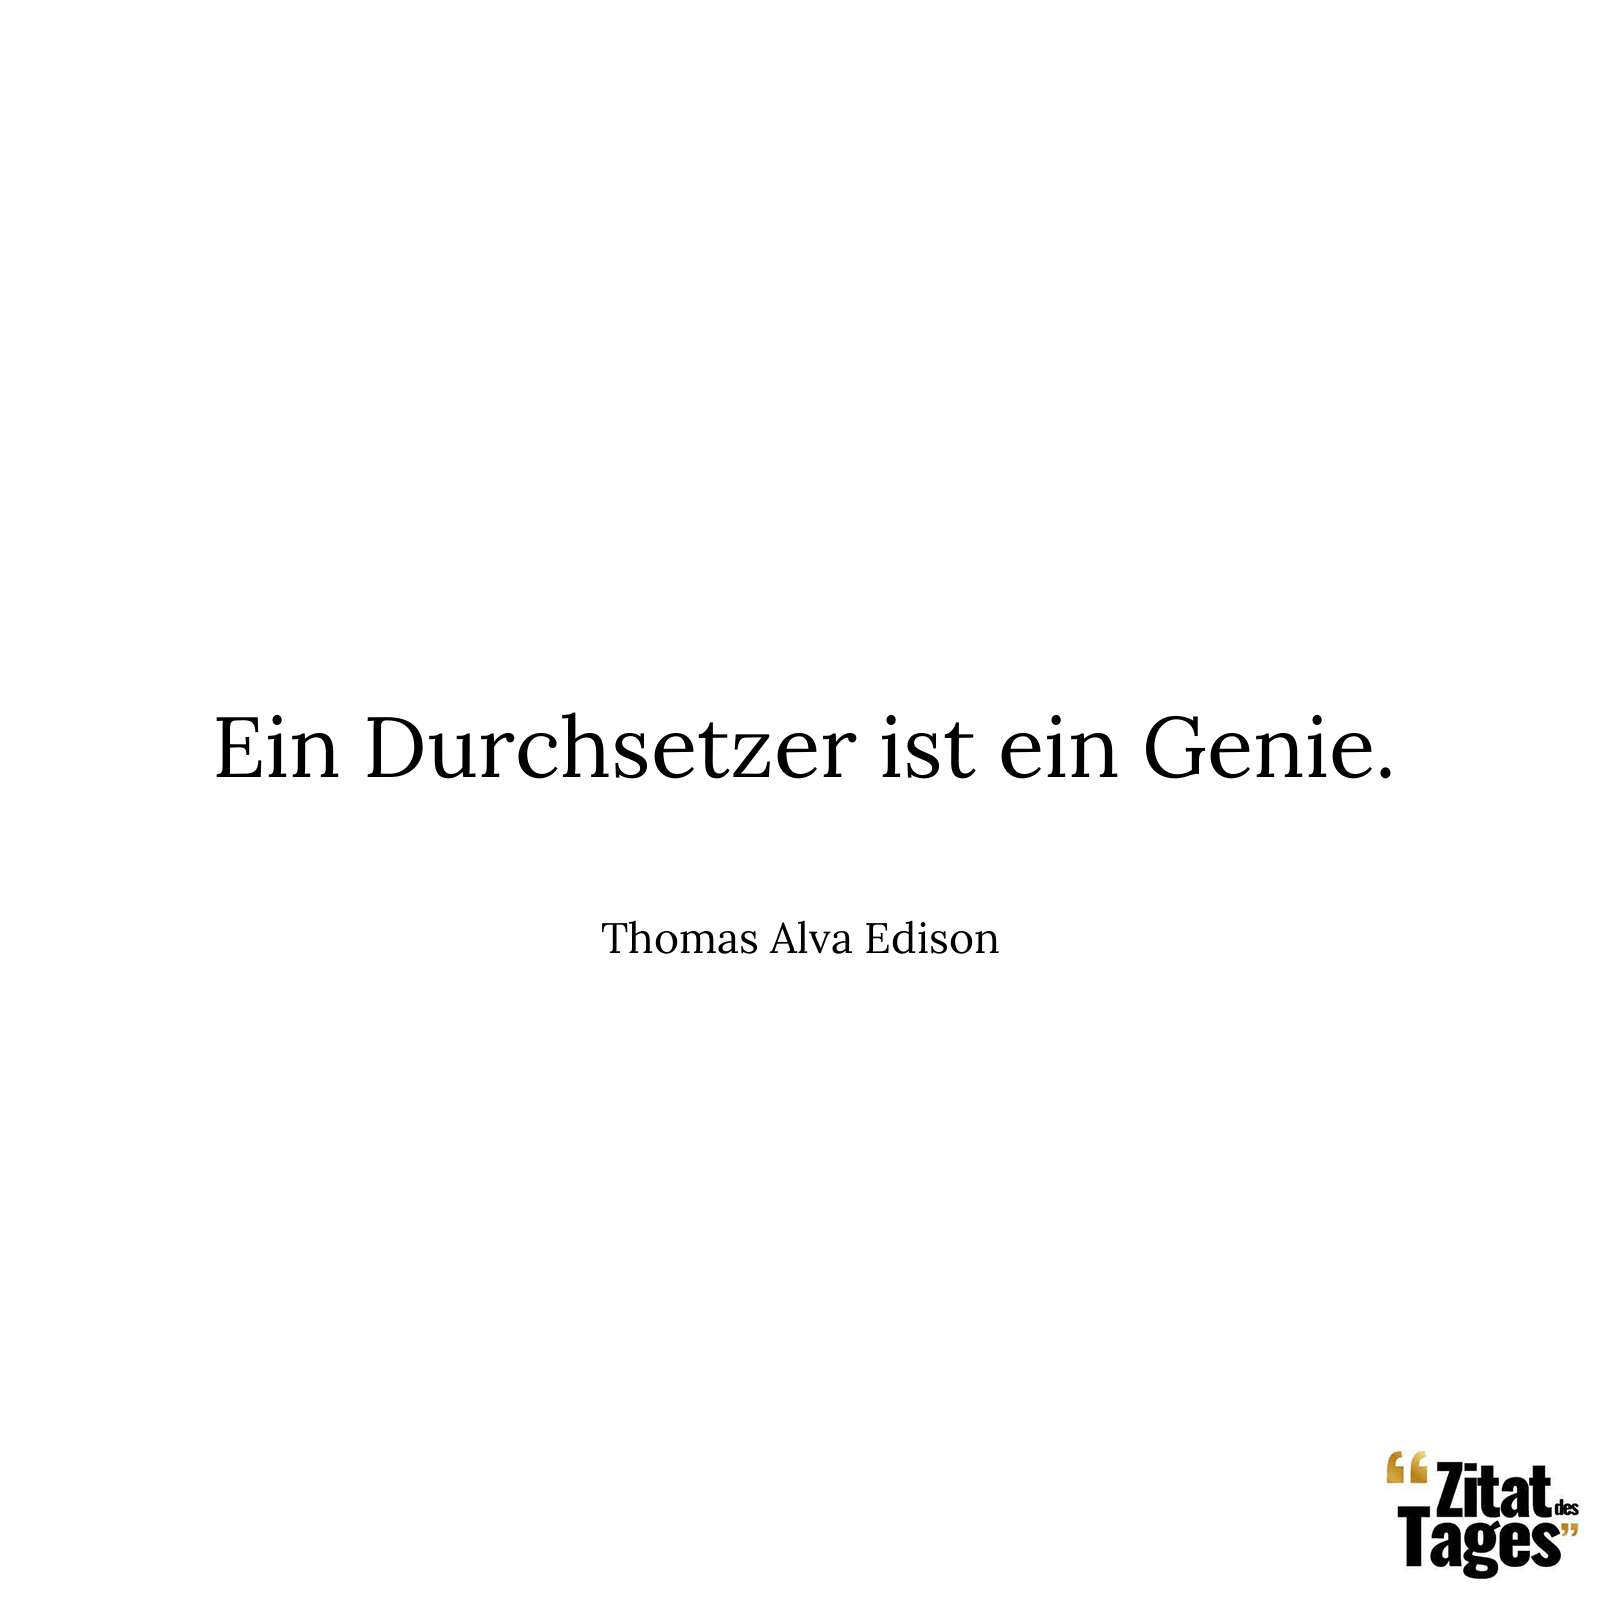 Ein Durchsetzer ist ein Genie. - Thomas Alva Edison